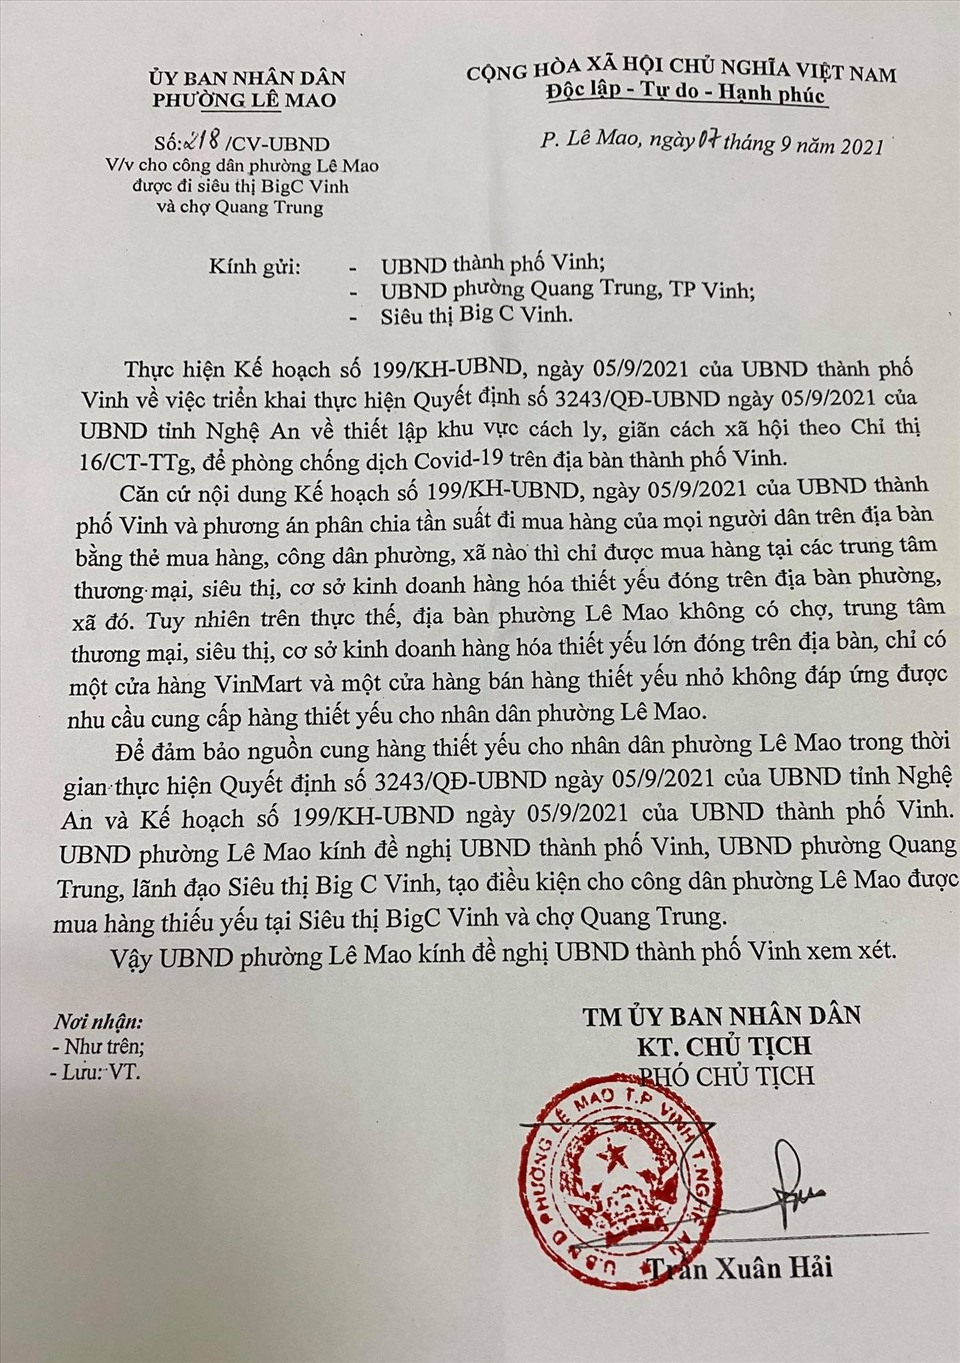 UBND phường Lê Mao đề nghị cho phép người dân trên địa bàn được mua hàng ở siêu thị Big C Vinh, nhưng không được chấp nhận. Ảnh: QĐ